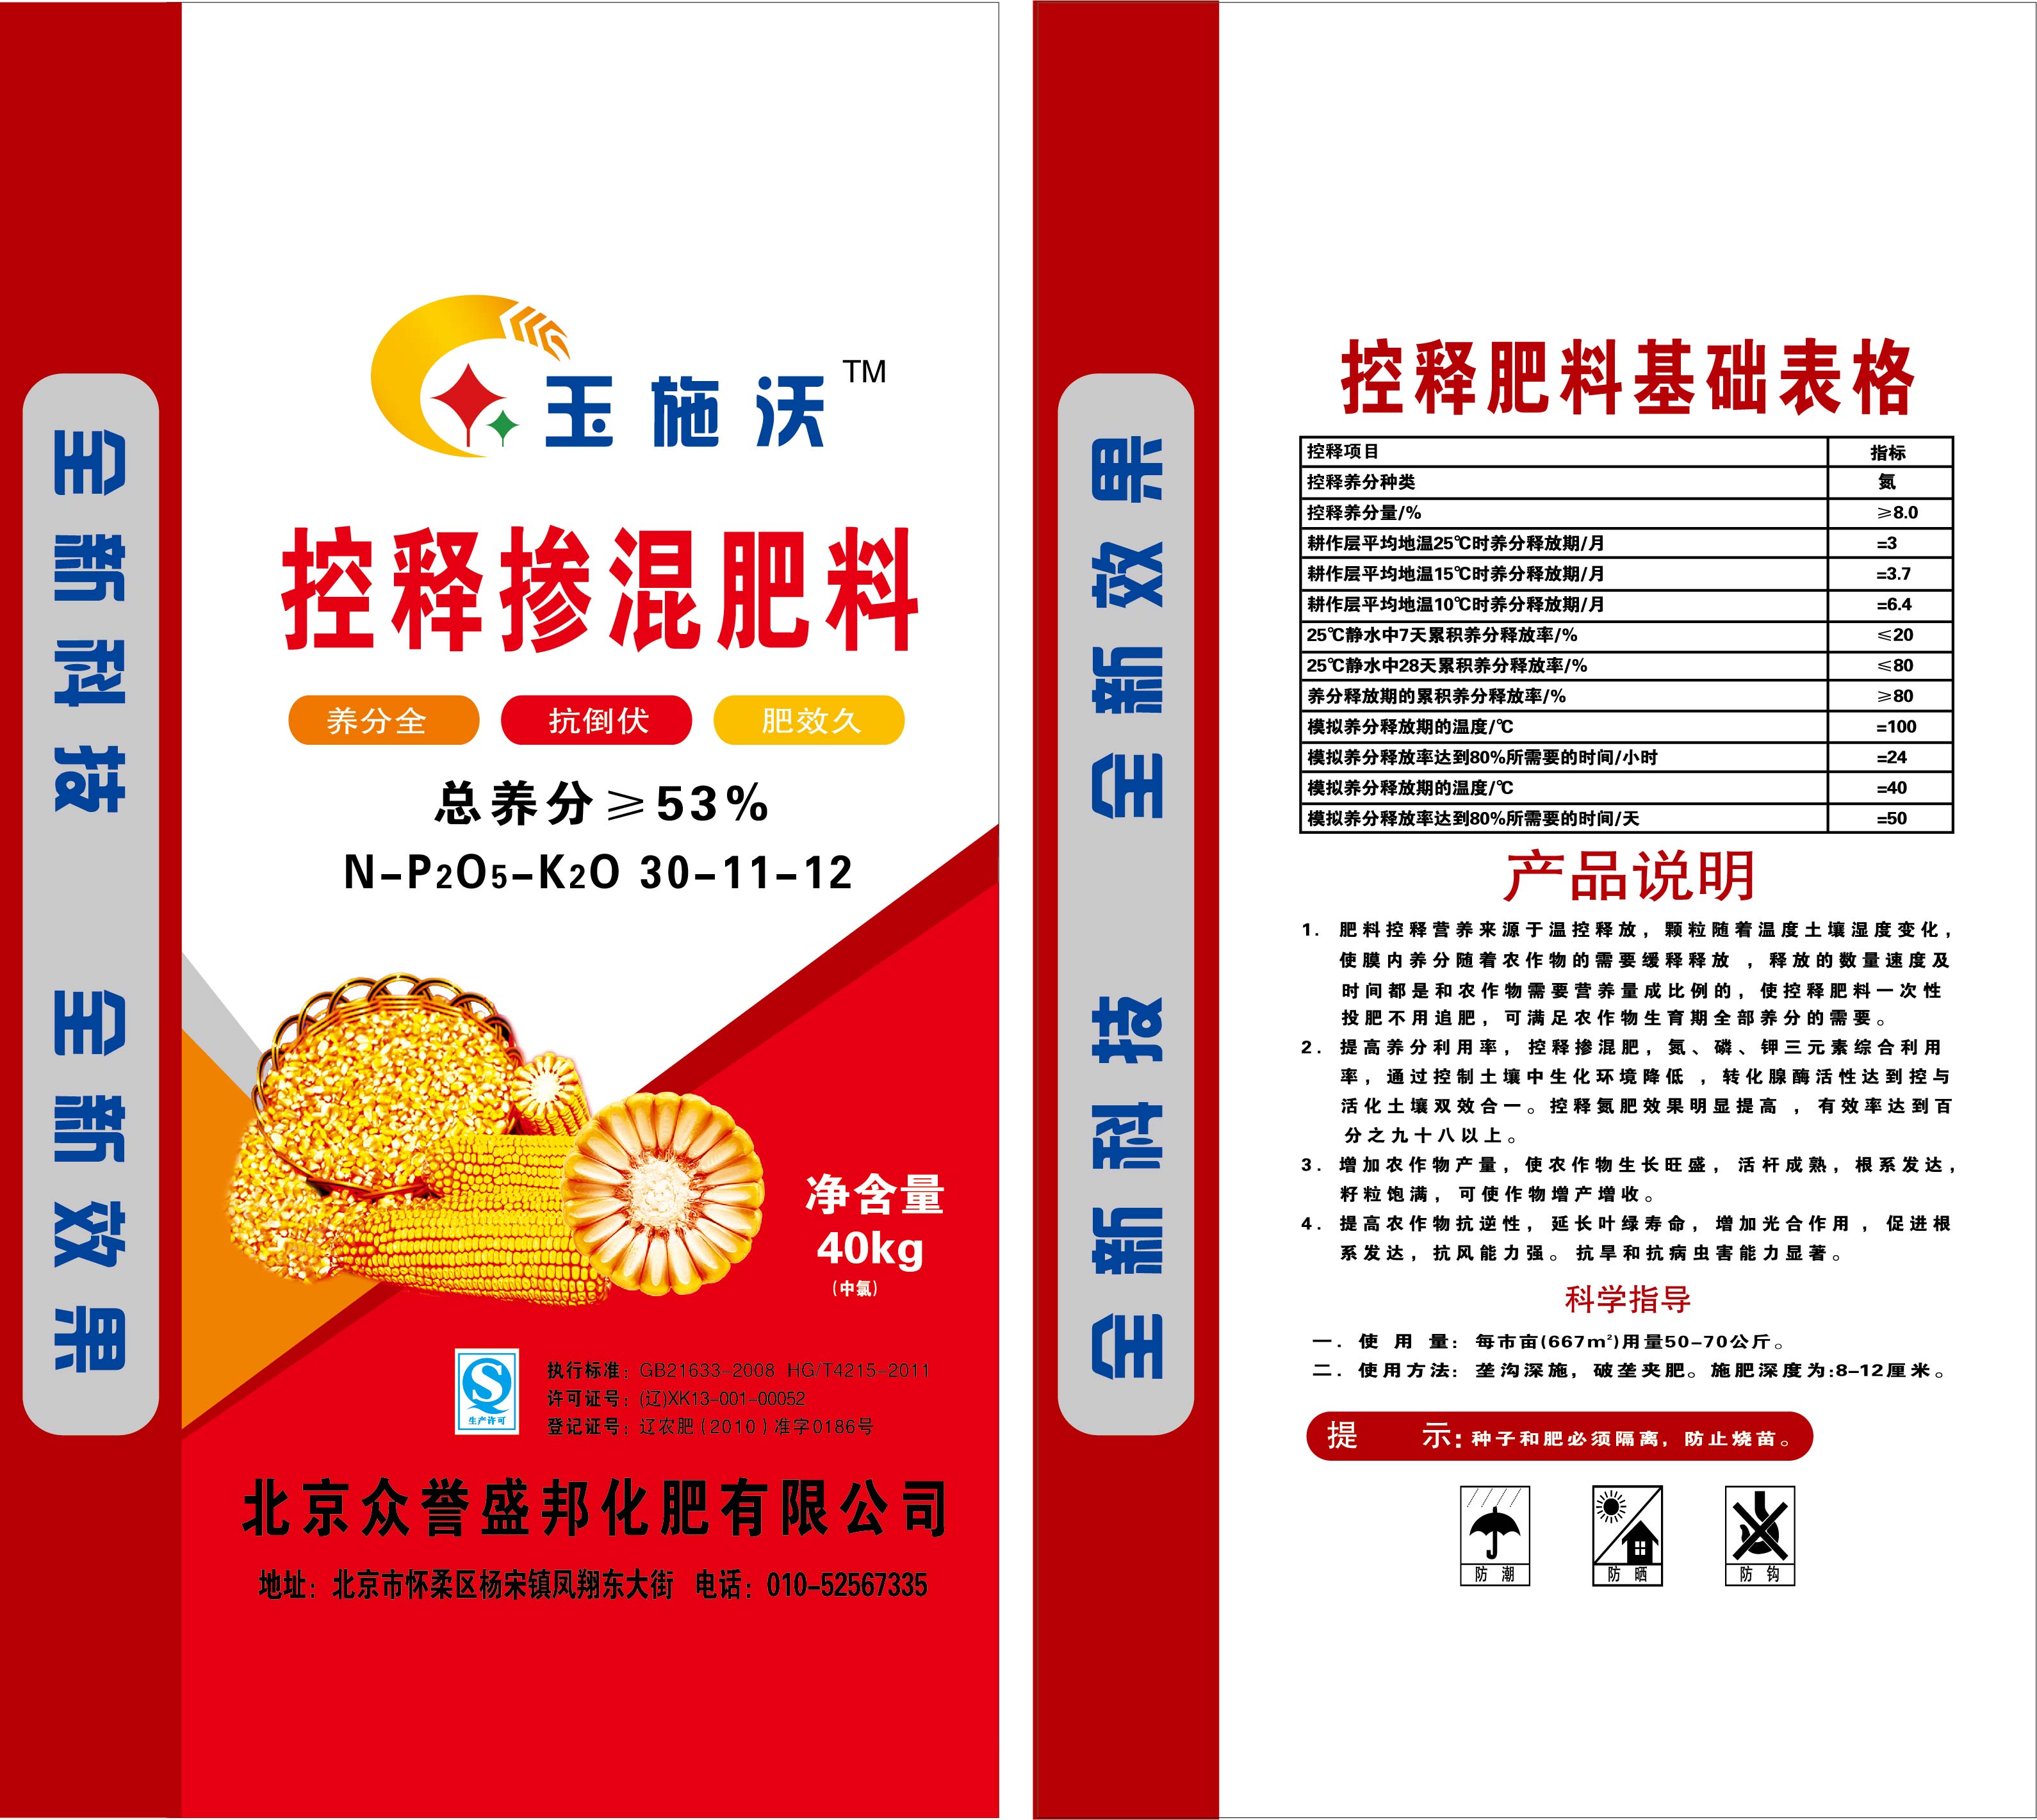 玉施沃掺混肥料 密植专用肥 薄膜缓释总养分大于或等于百分之53北京众誉盛邦化肥有限公司